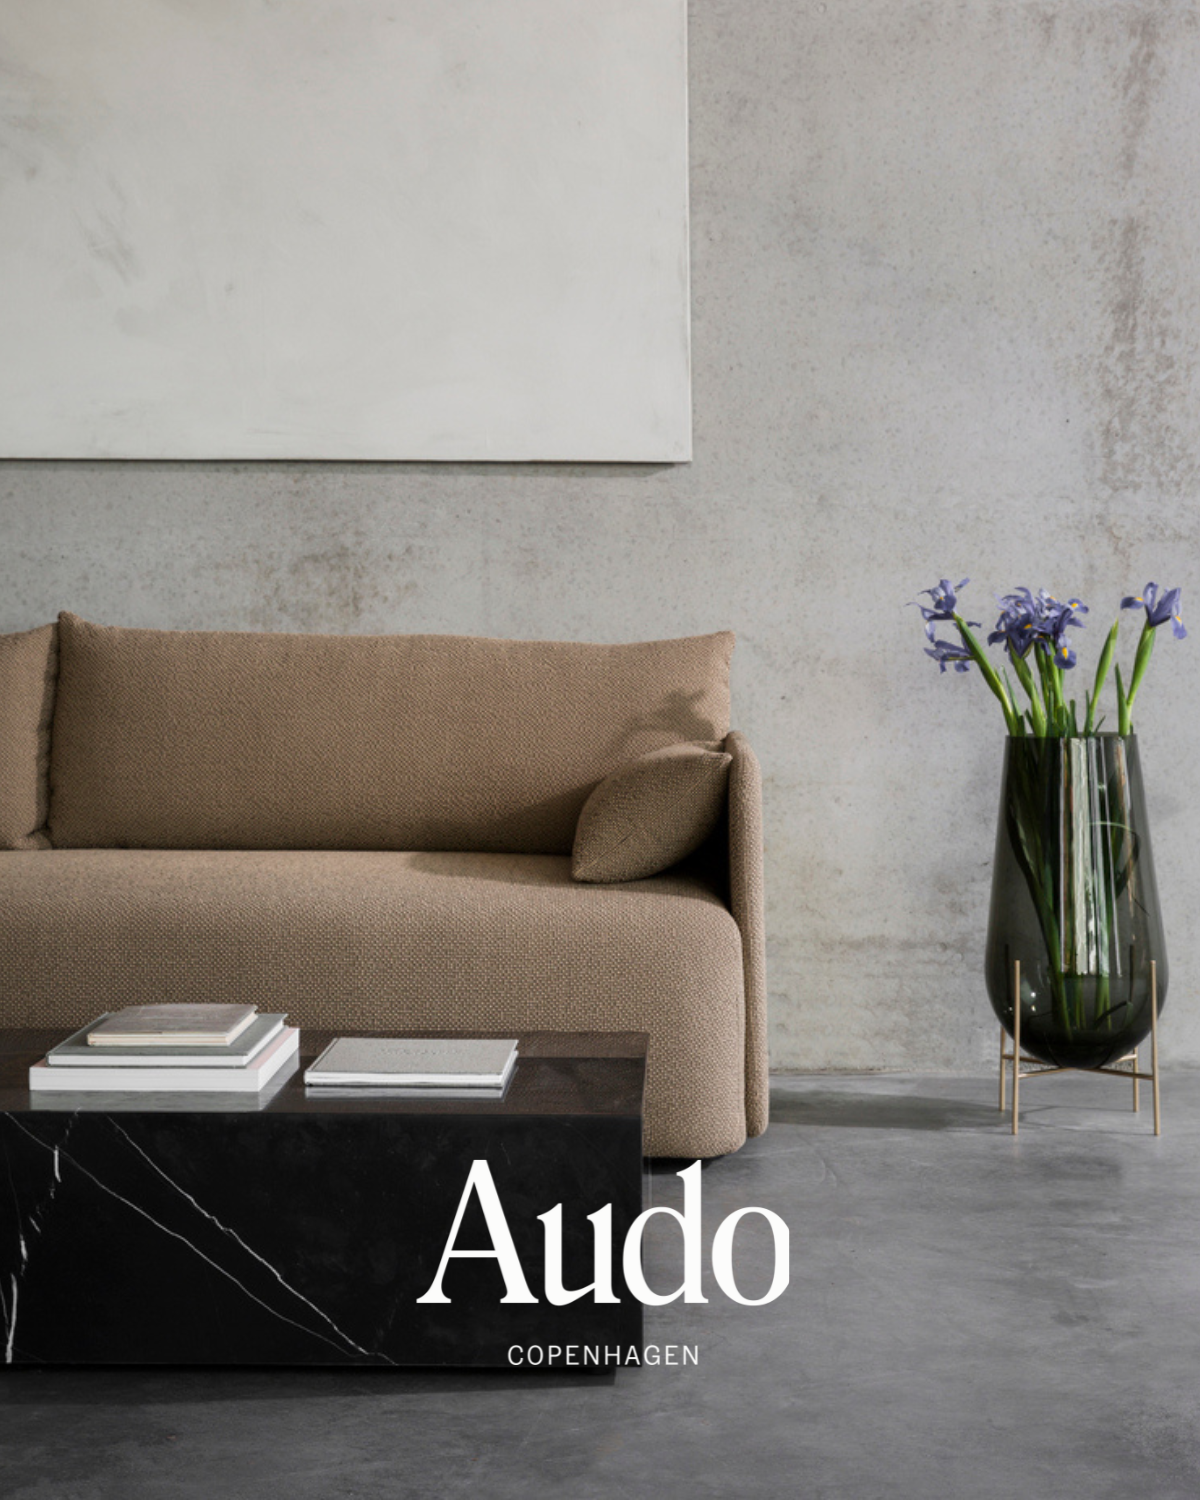 北歐丹麥家具品牌 Audo Copenhagen